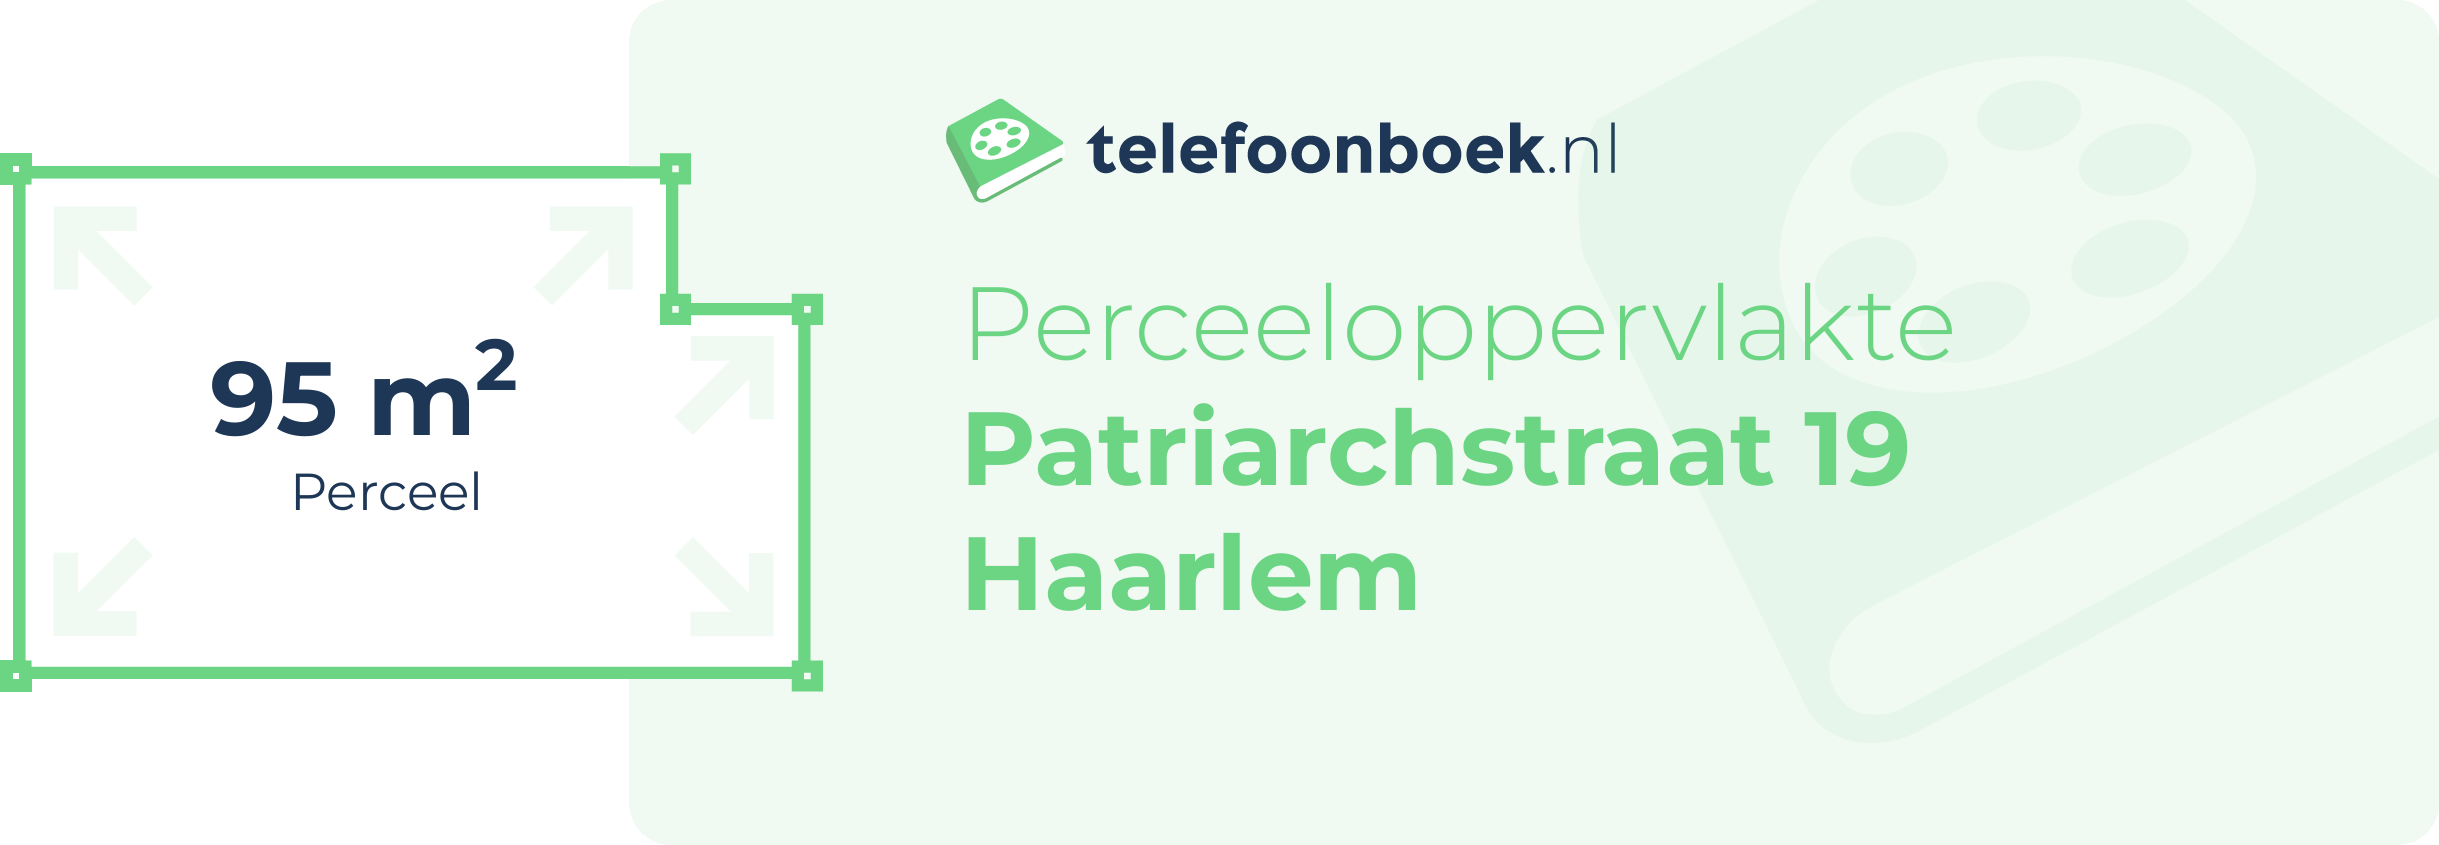 Perceeloppervlakte Patriarchstraat 19 Haarlem